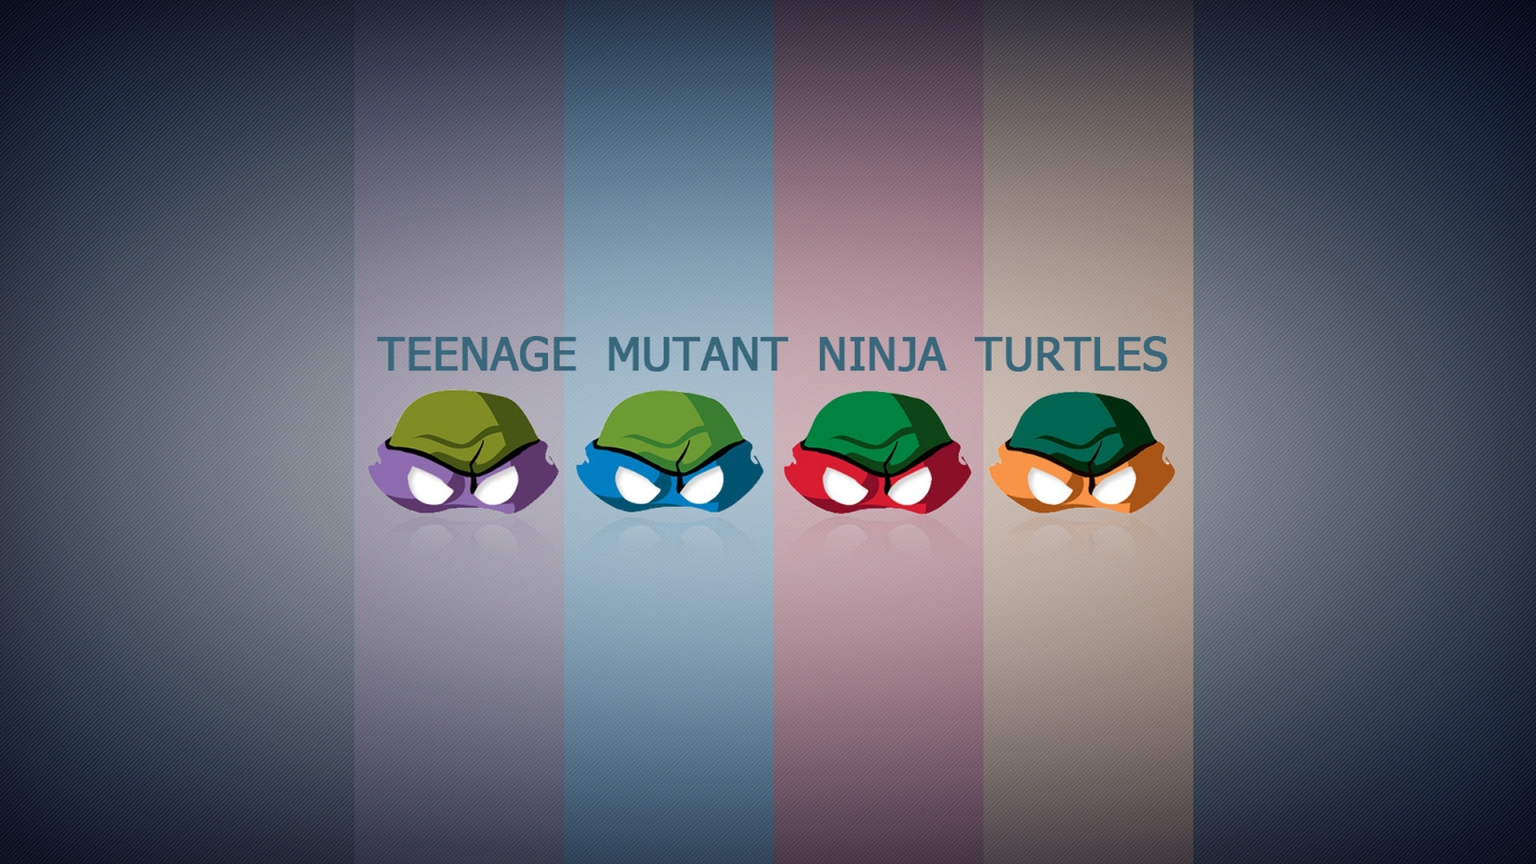 Teengae Mutant Ninja Turtles for 1536 x 864 HDTV resolution